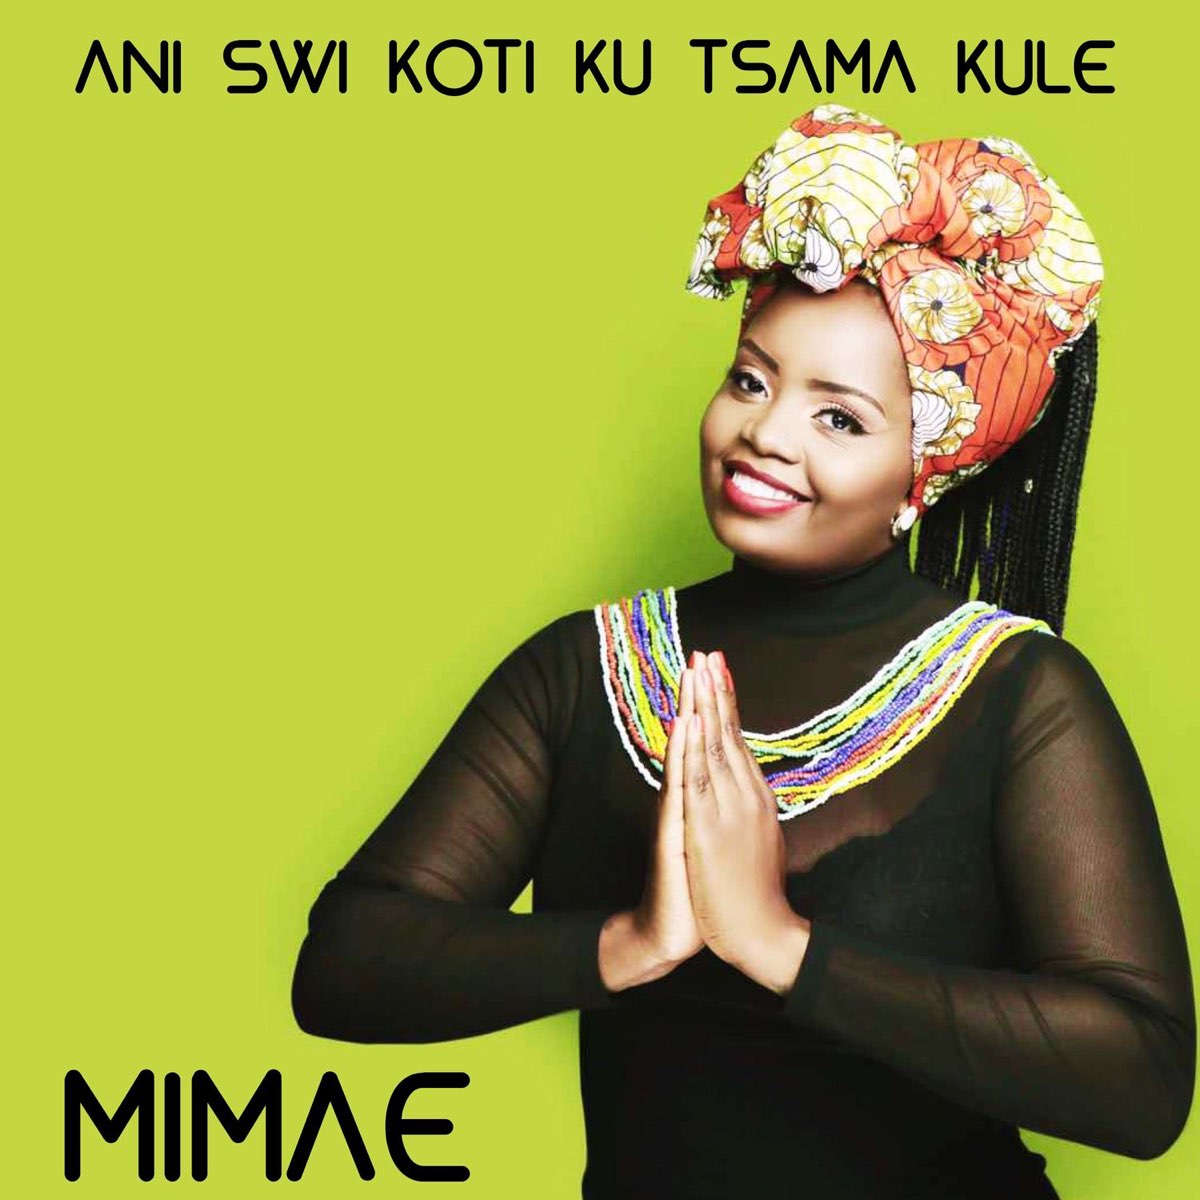 Ani Swi Koti Ku Tsama Kule - Single de Mimae no Apple Music